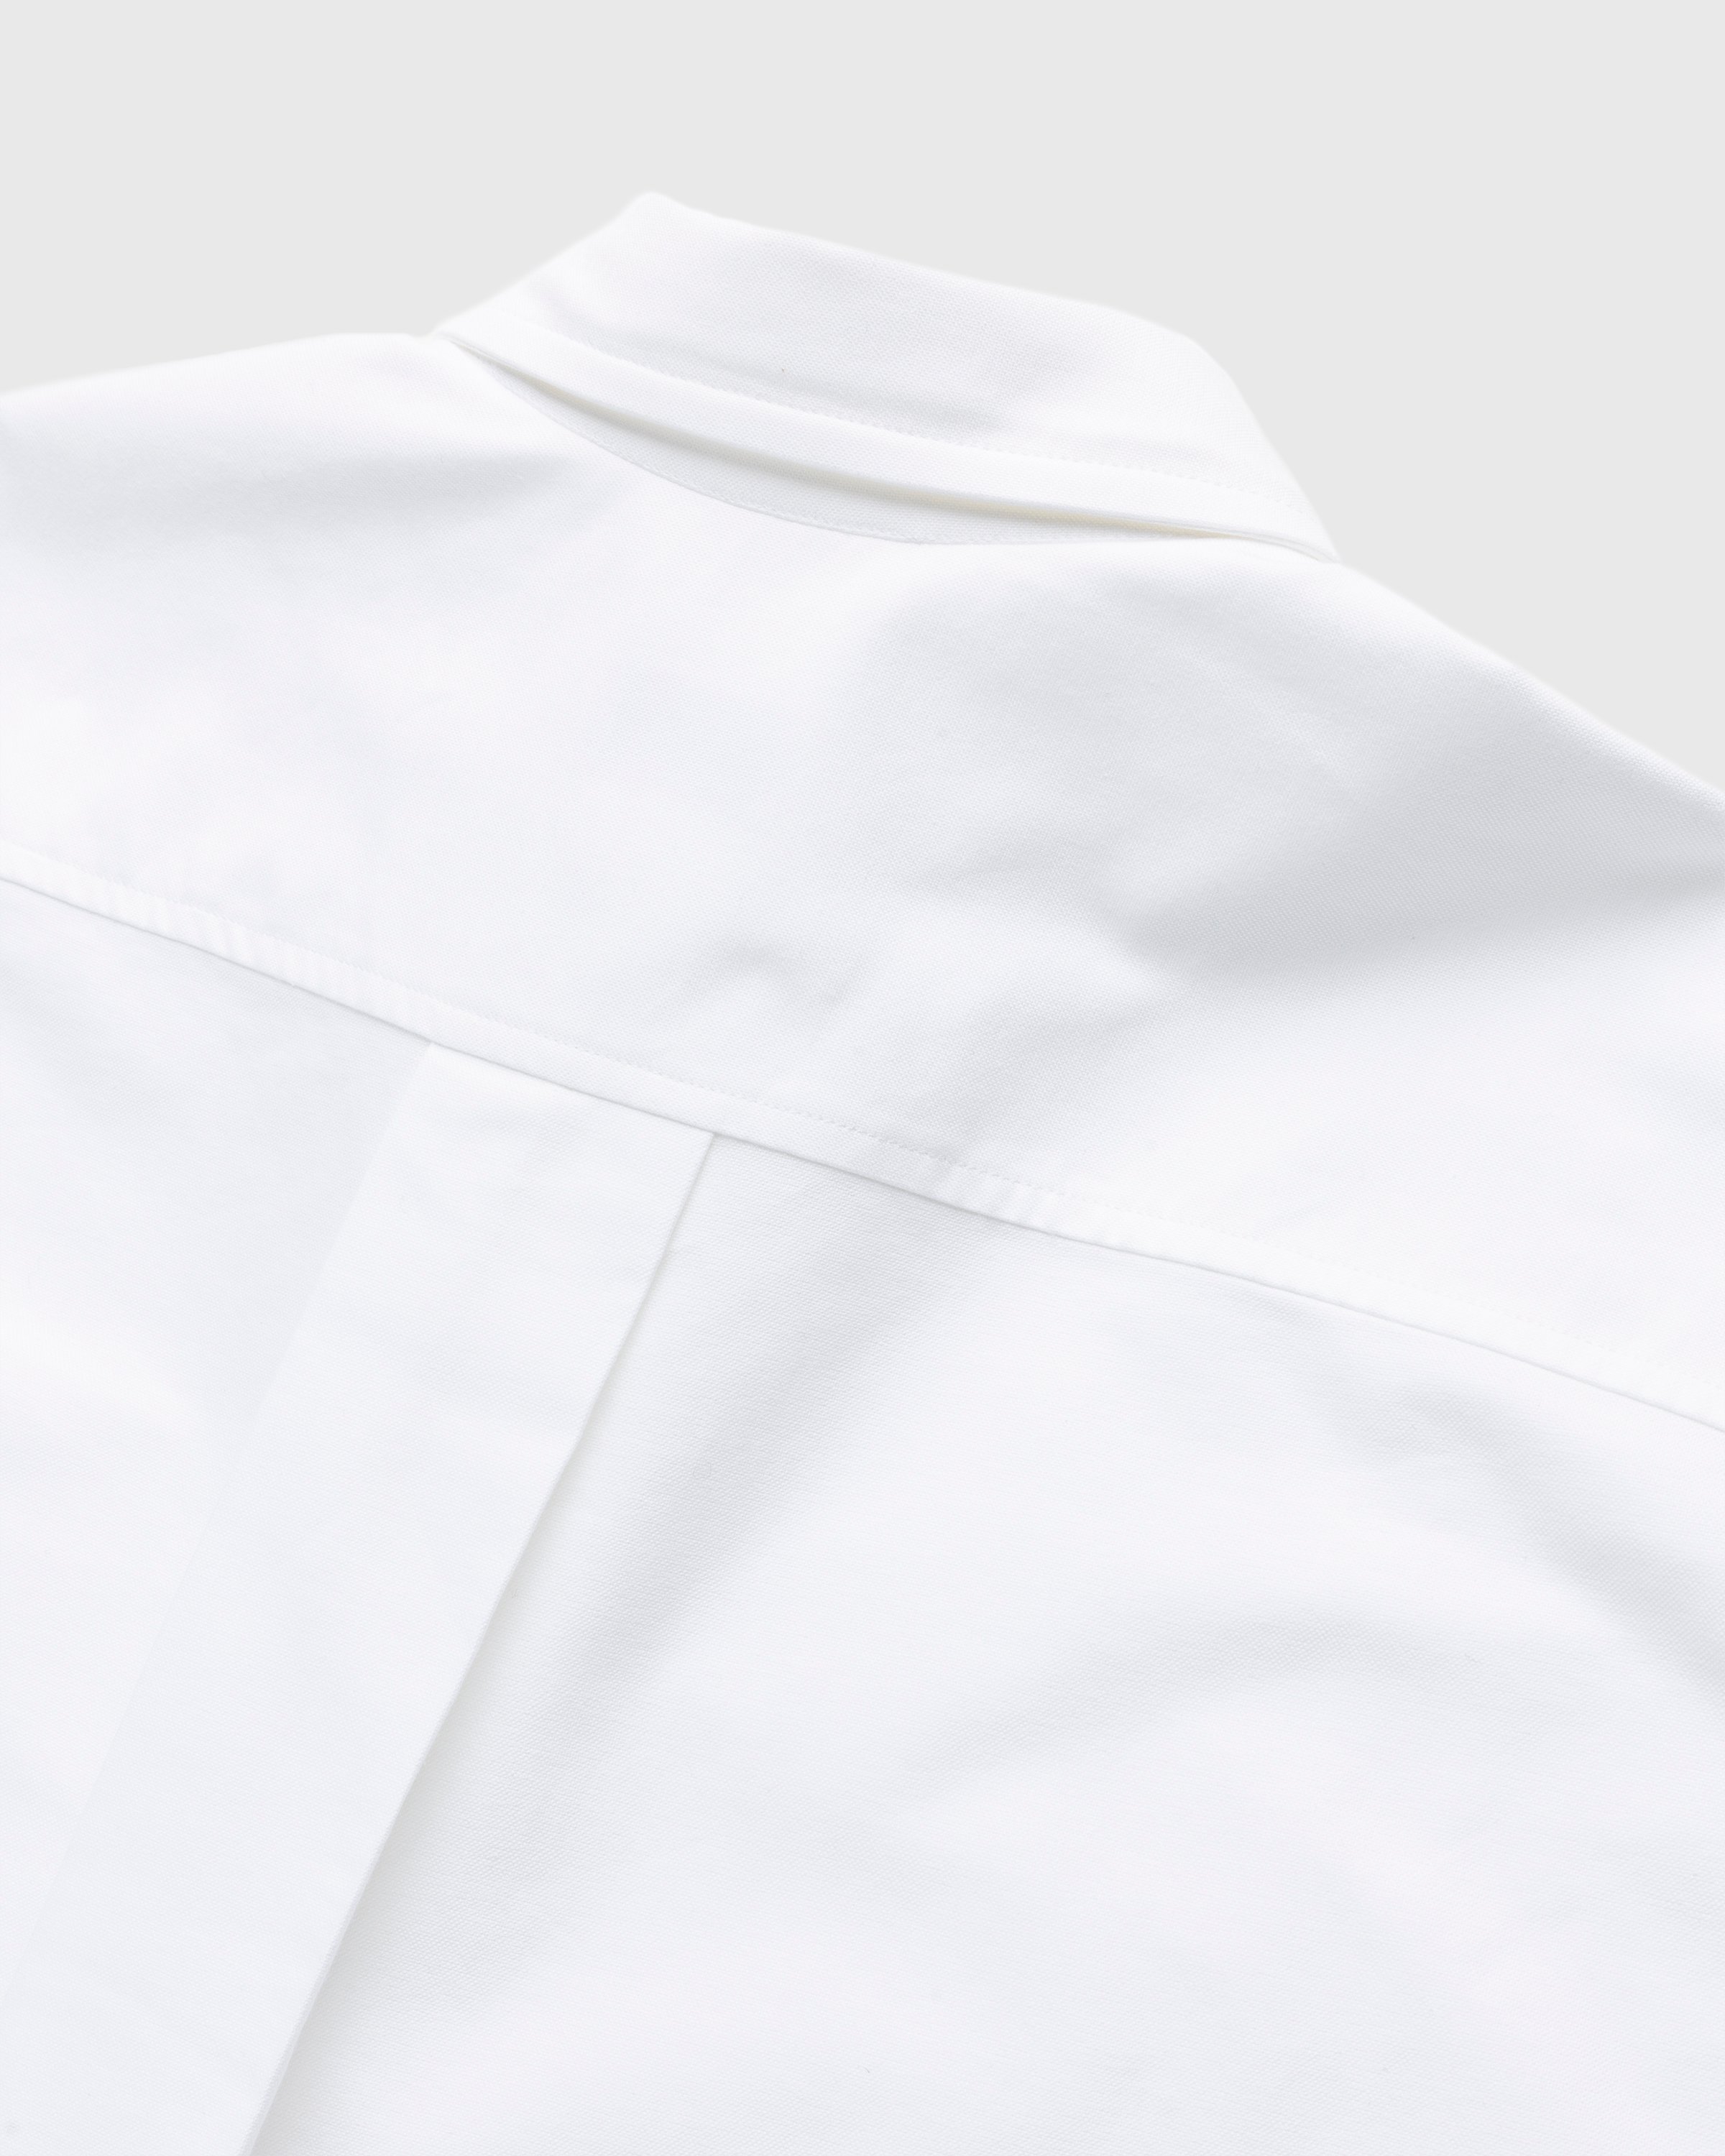 Kenzo - Boke Flower Crest Overshirt White - Clothing - White - Image 5